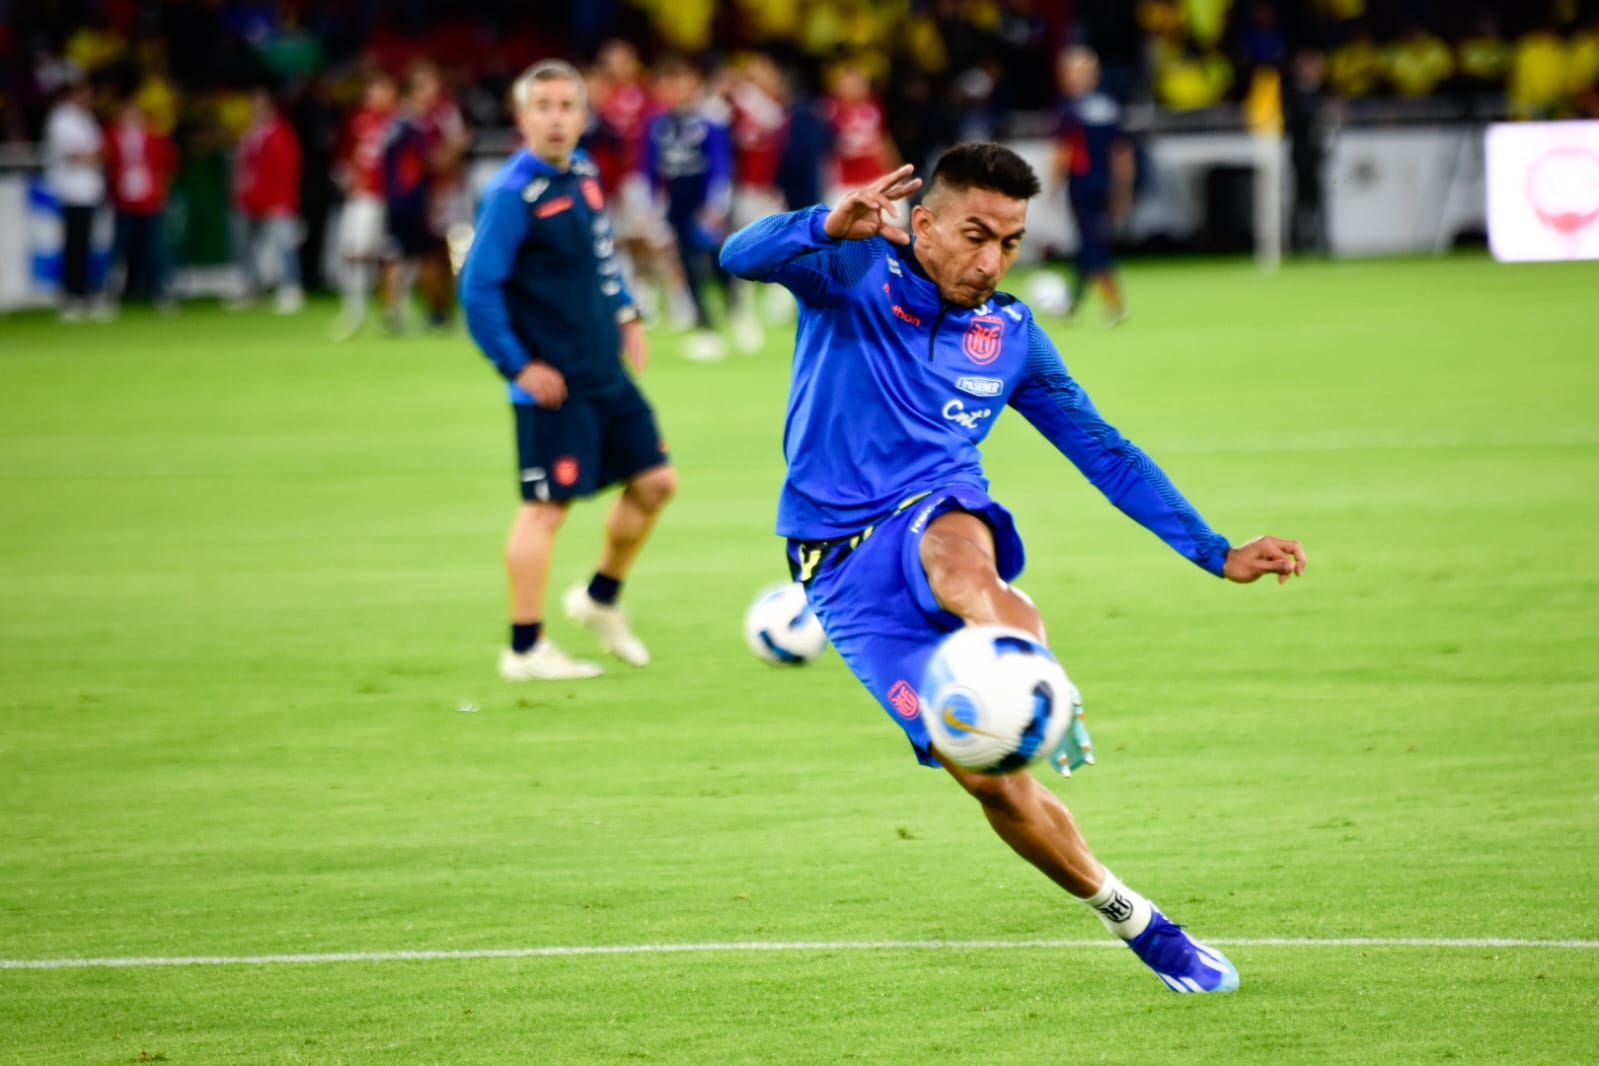 Ecuador derrotó 1-0 a Chile en Quito con gol de Ángel Mena